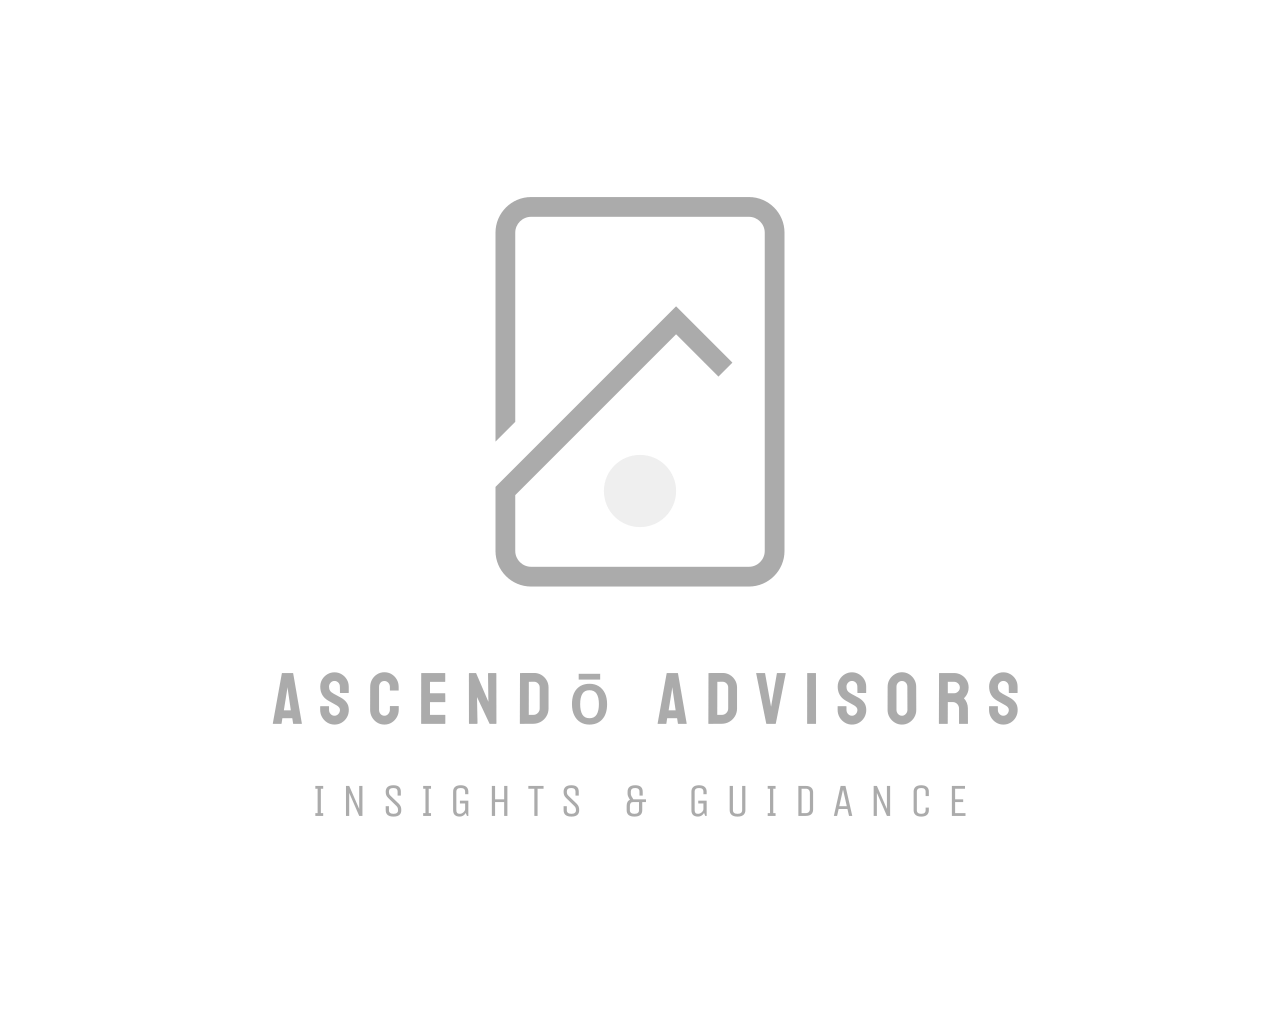 Ascendo Advisors